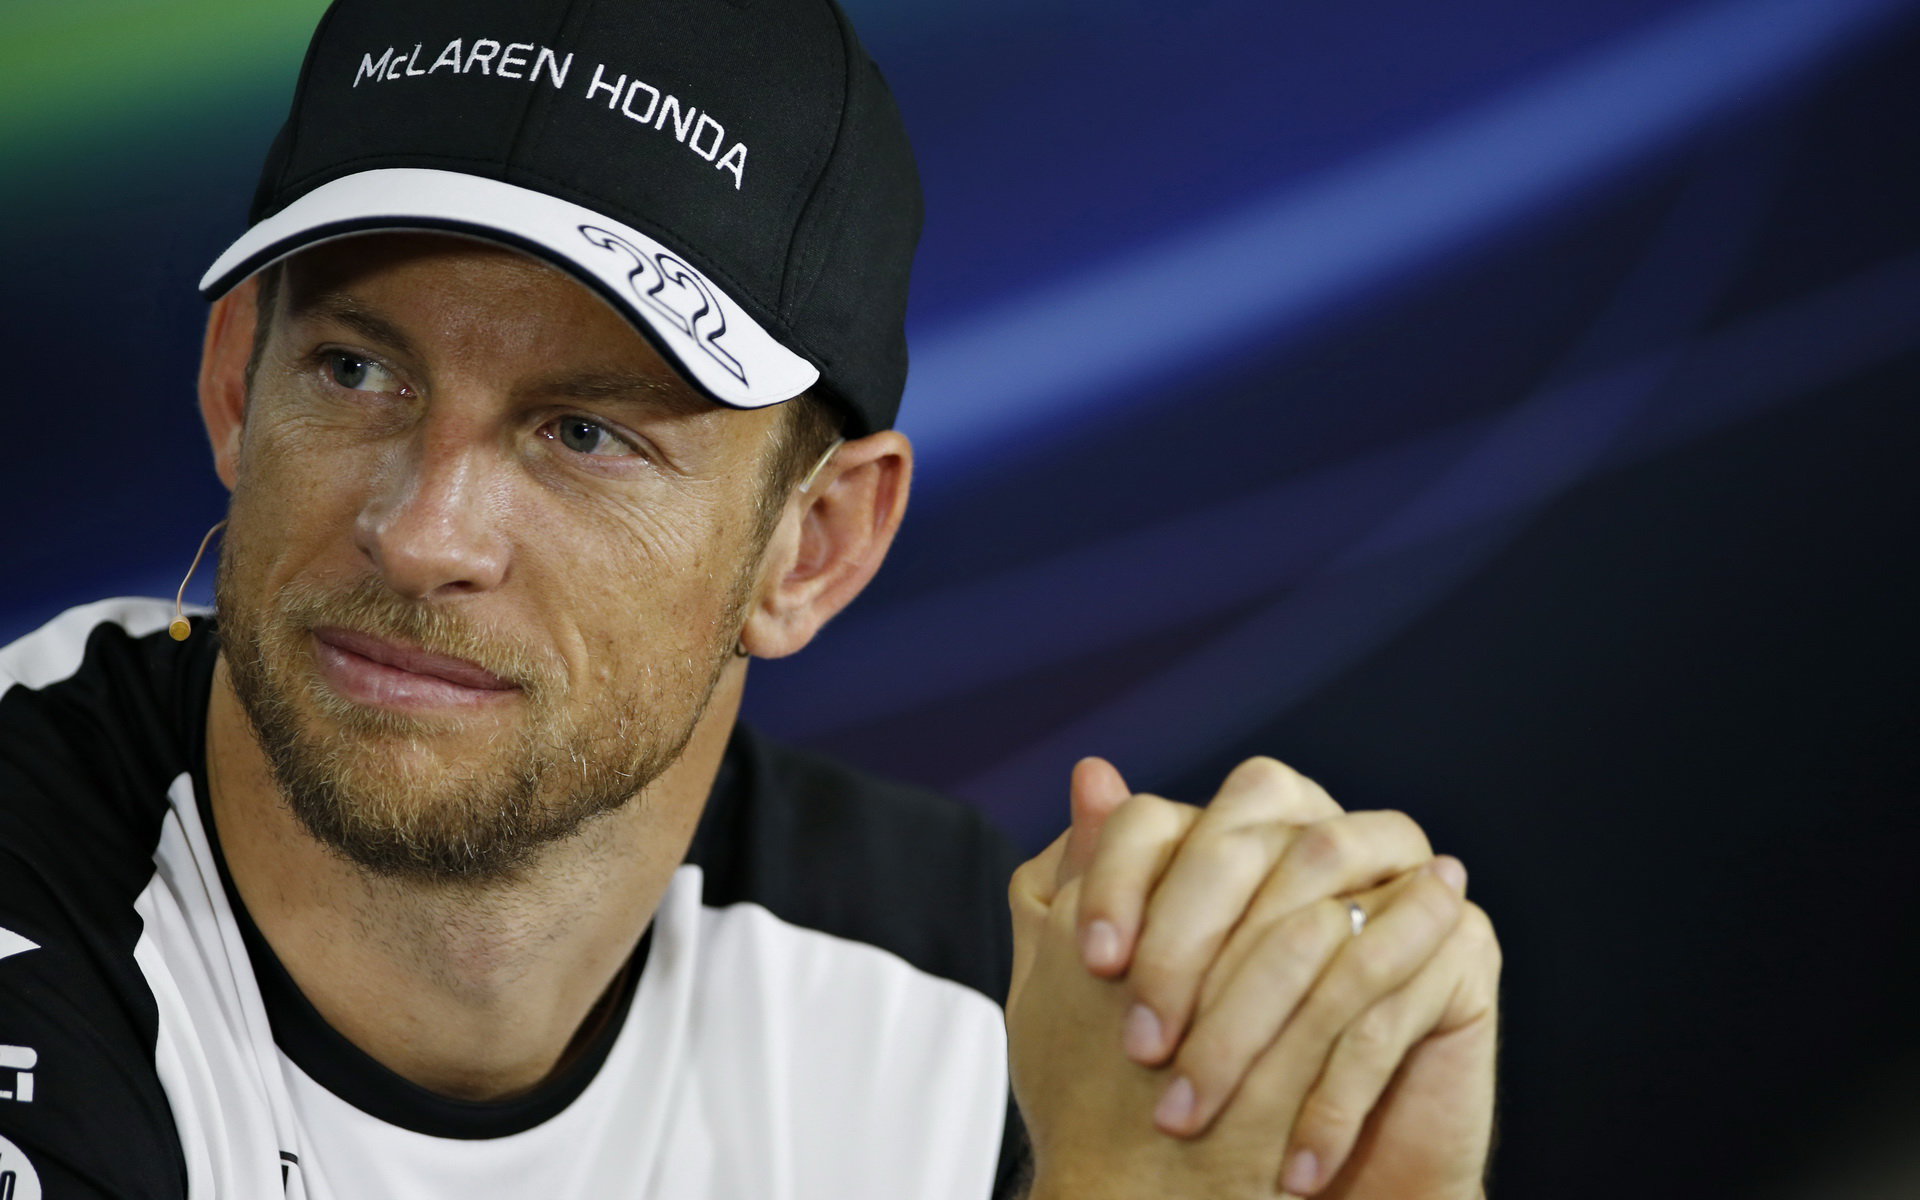 Podaří se McLarenu a Buttonovi aspoň trochu zmírnit zklamání ze sezóny 2015?